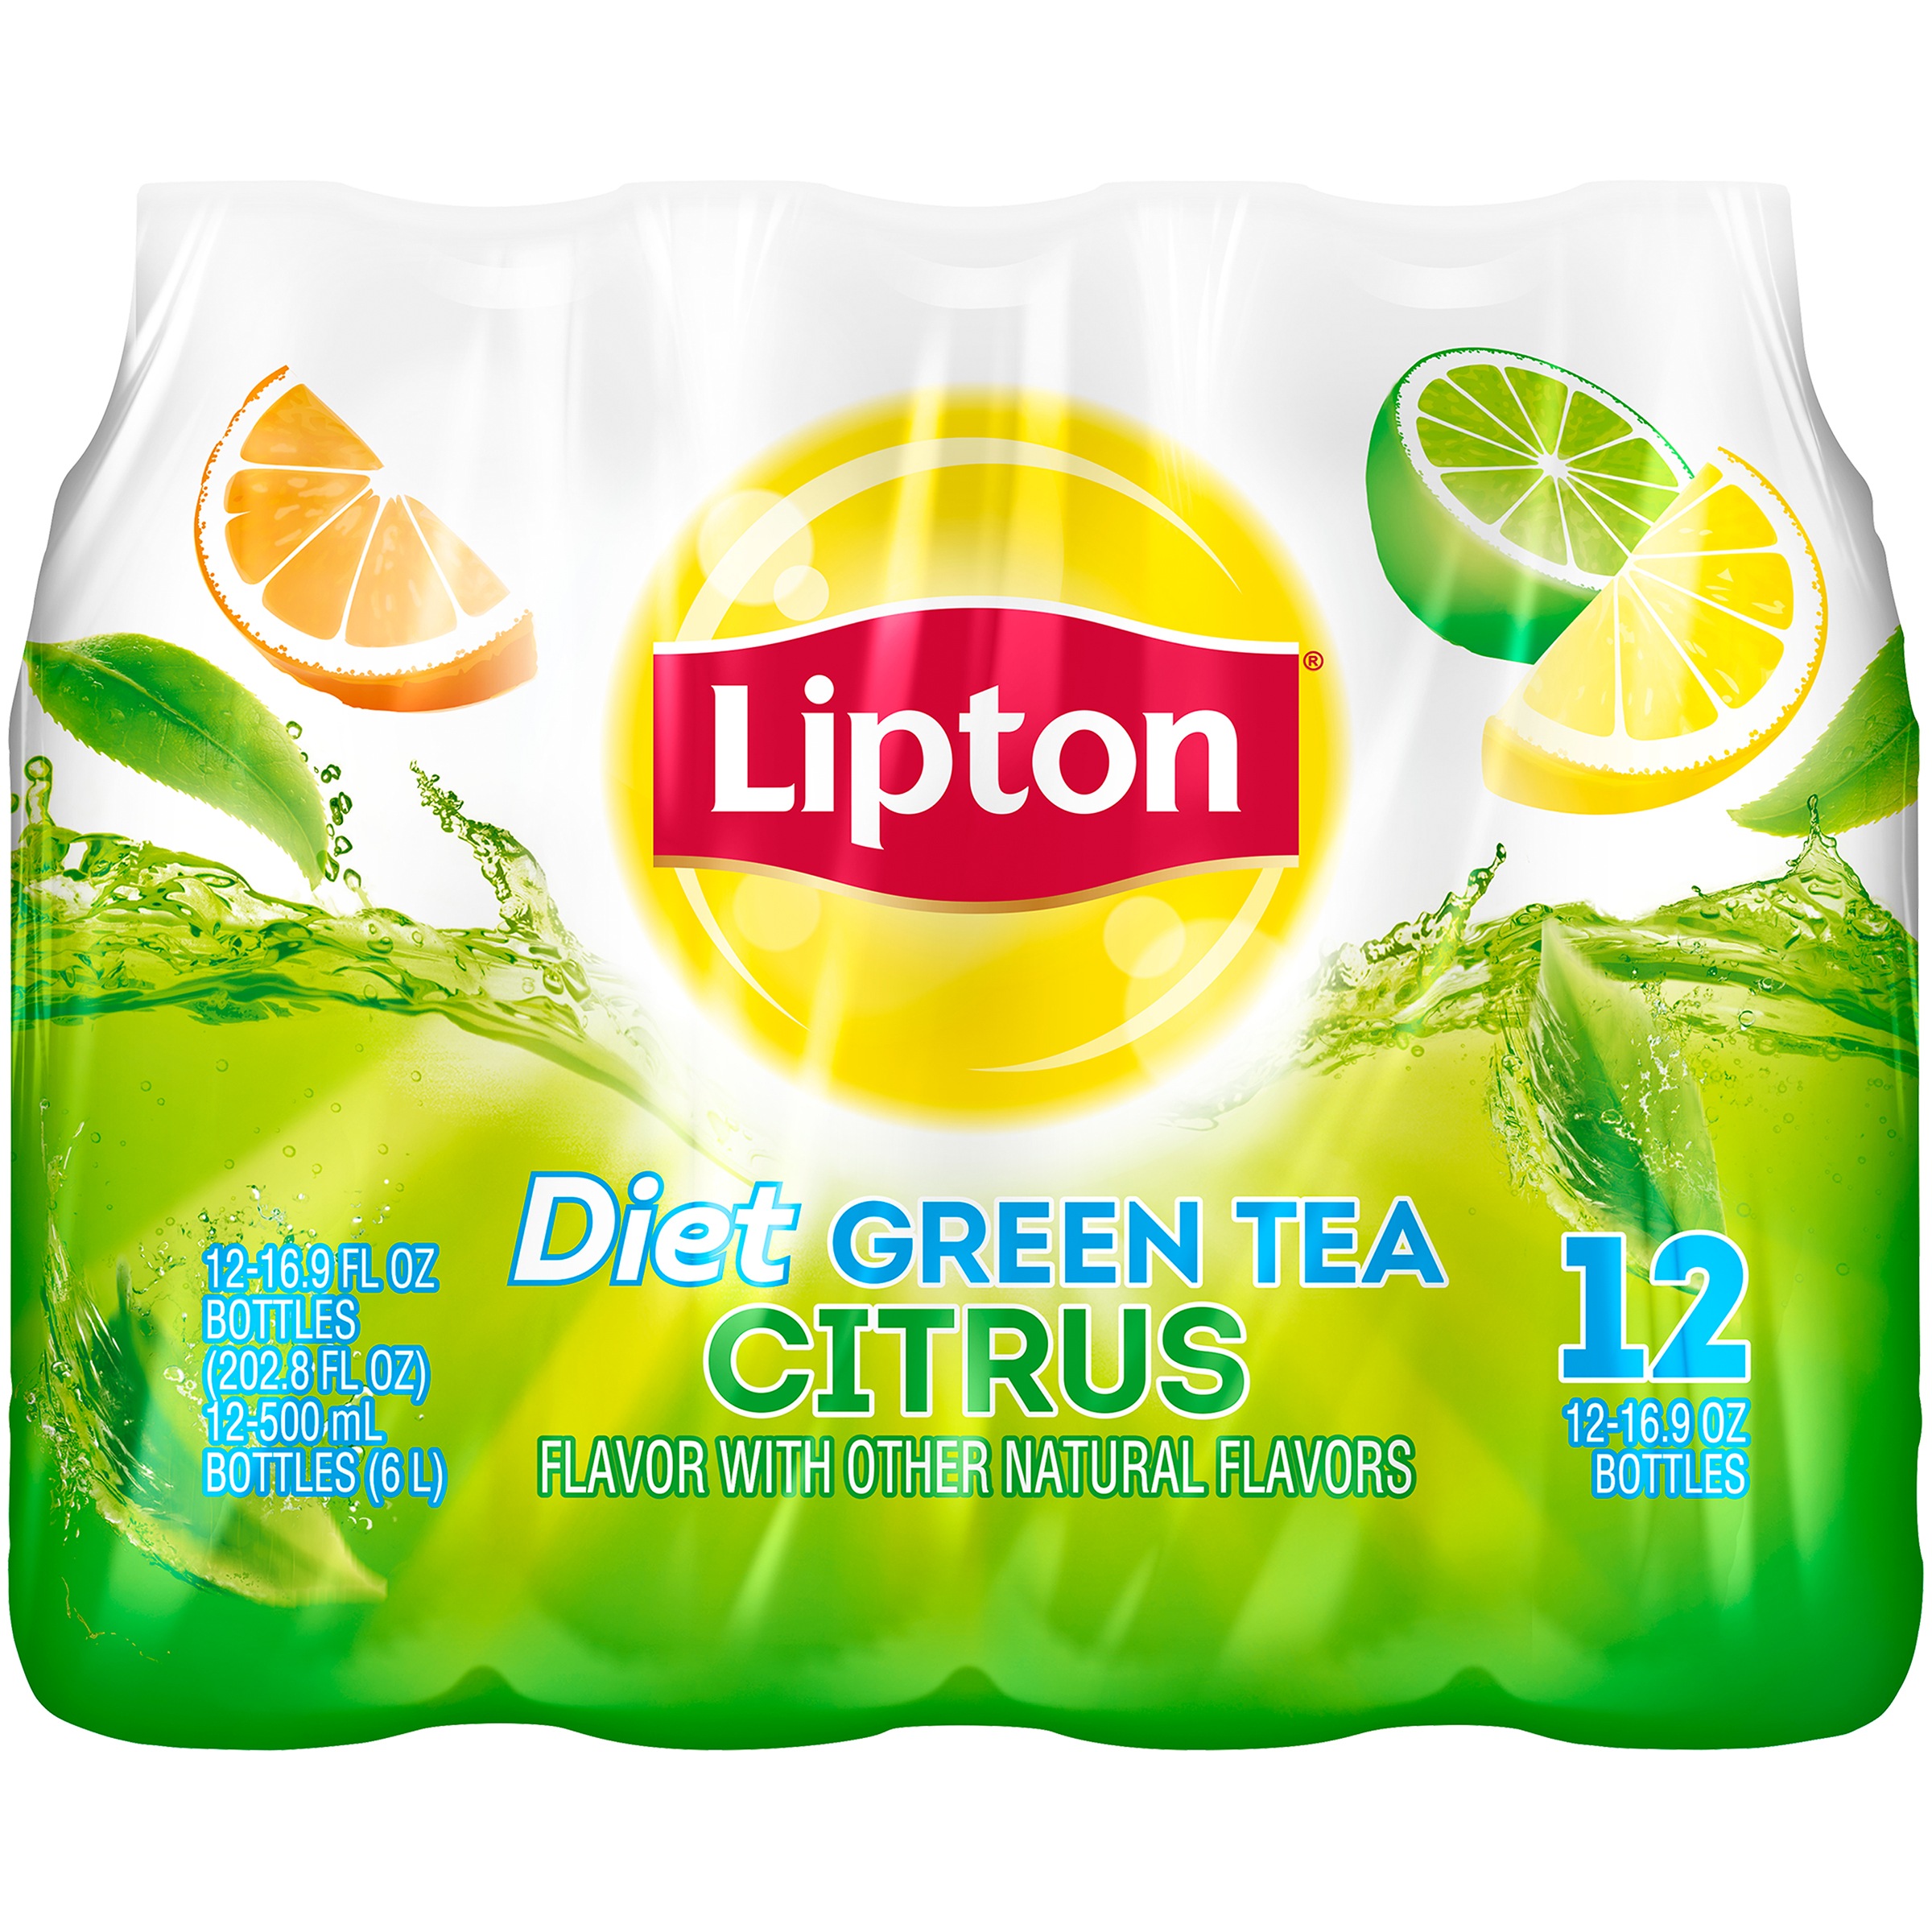 Lipton Diet Green Tea Citrus Iced Tea, Bottled Tea Drink, 16.9 fl oz, 12 Pack Bottles - image 1 of 5